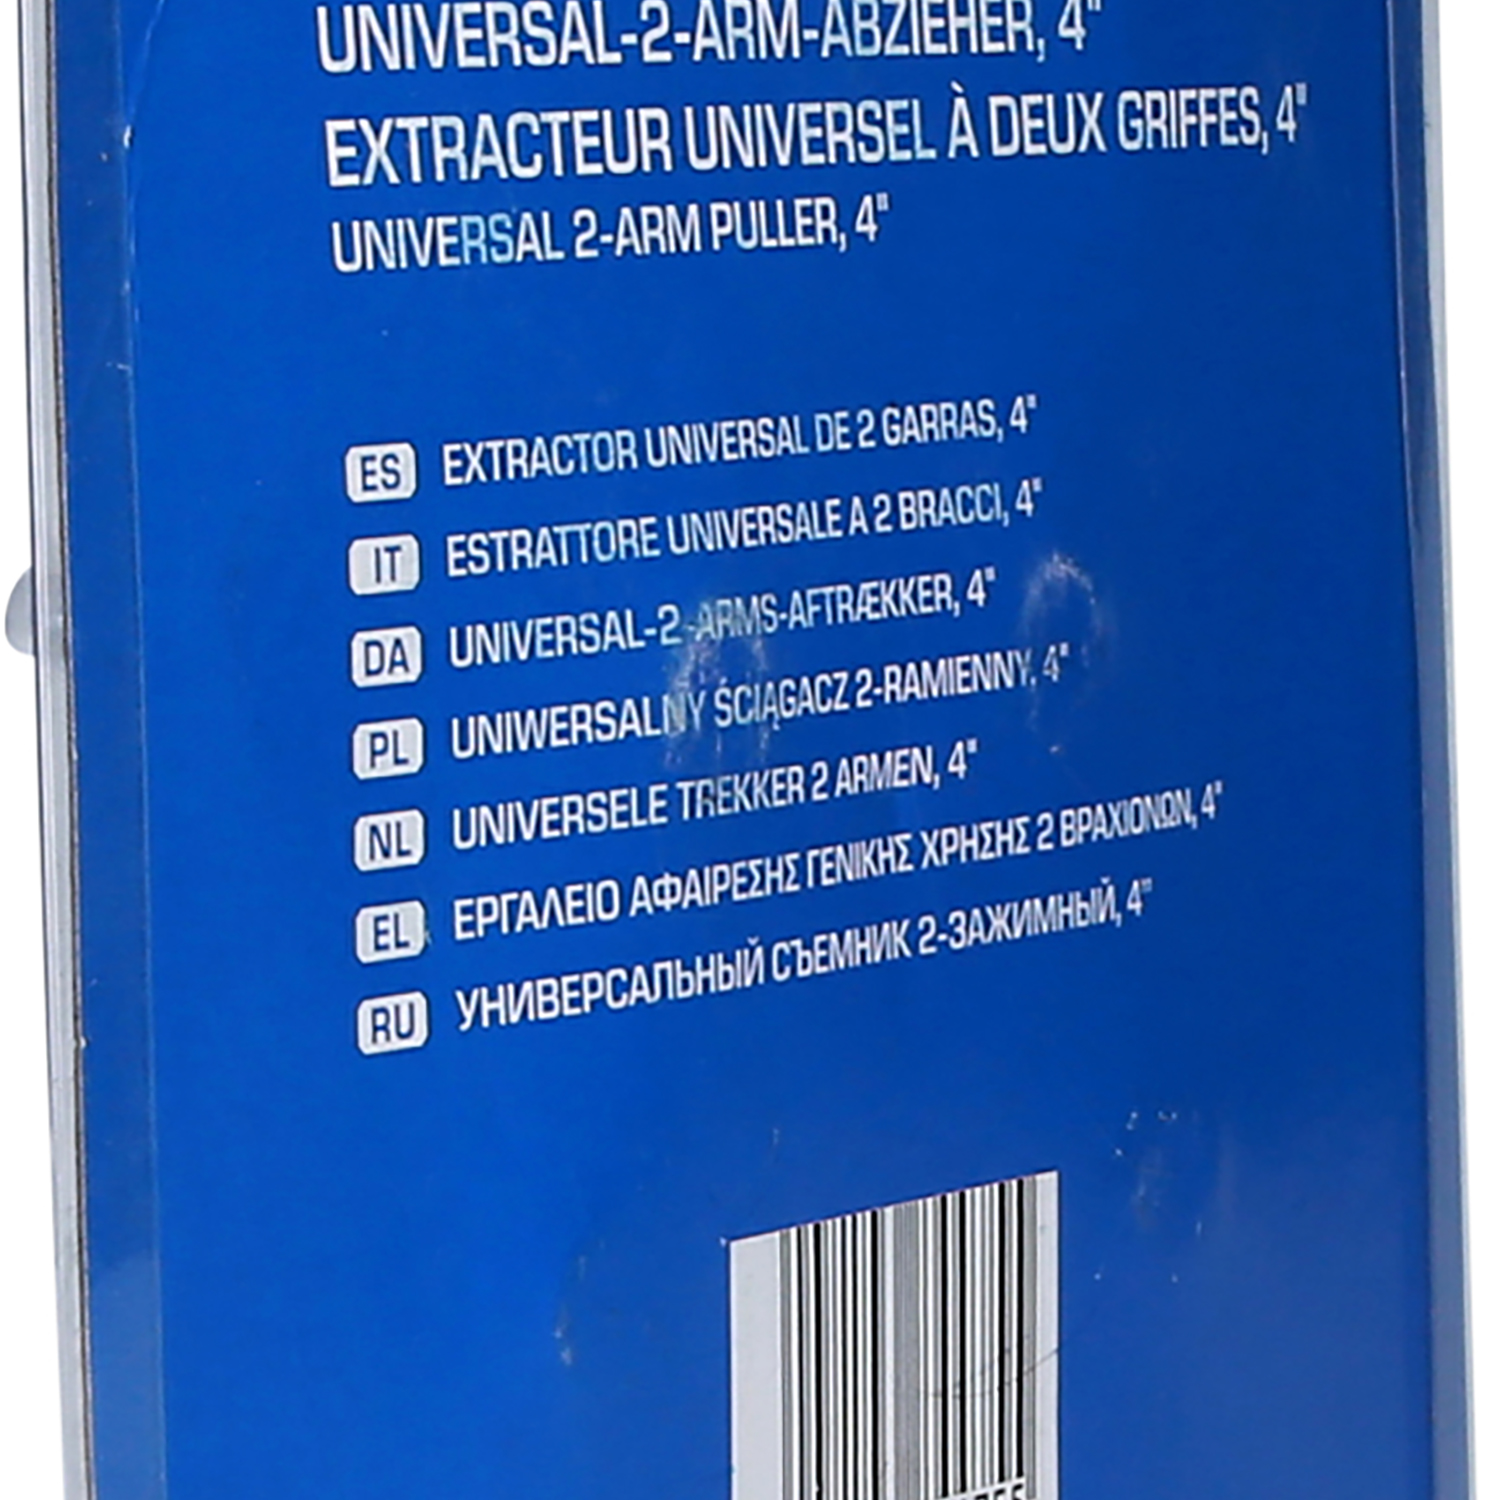 Universal-2-Arm-Abzieher, 4